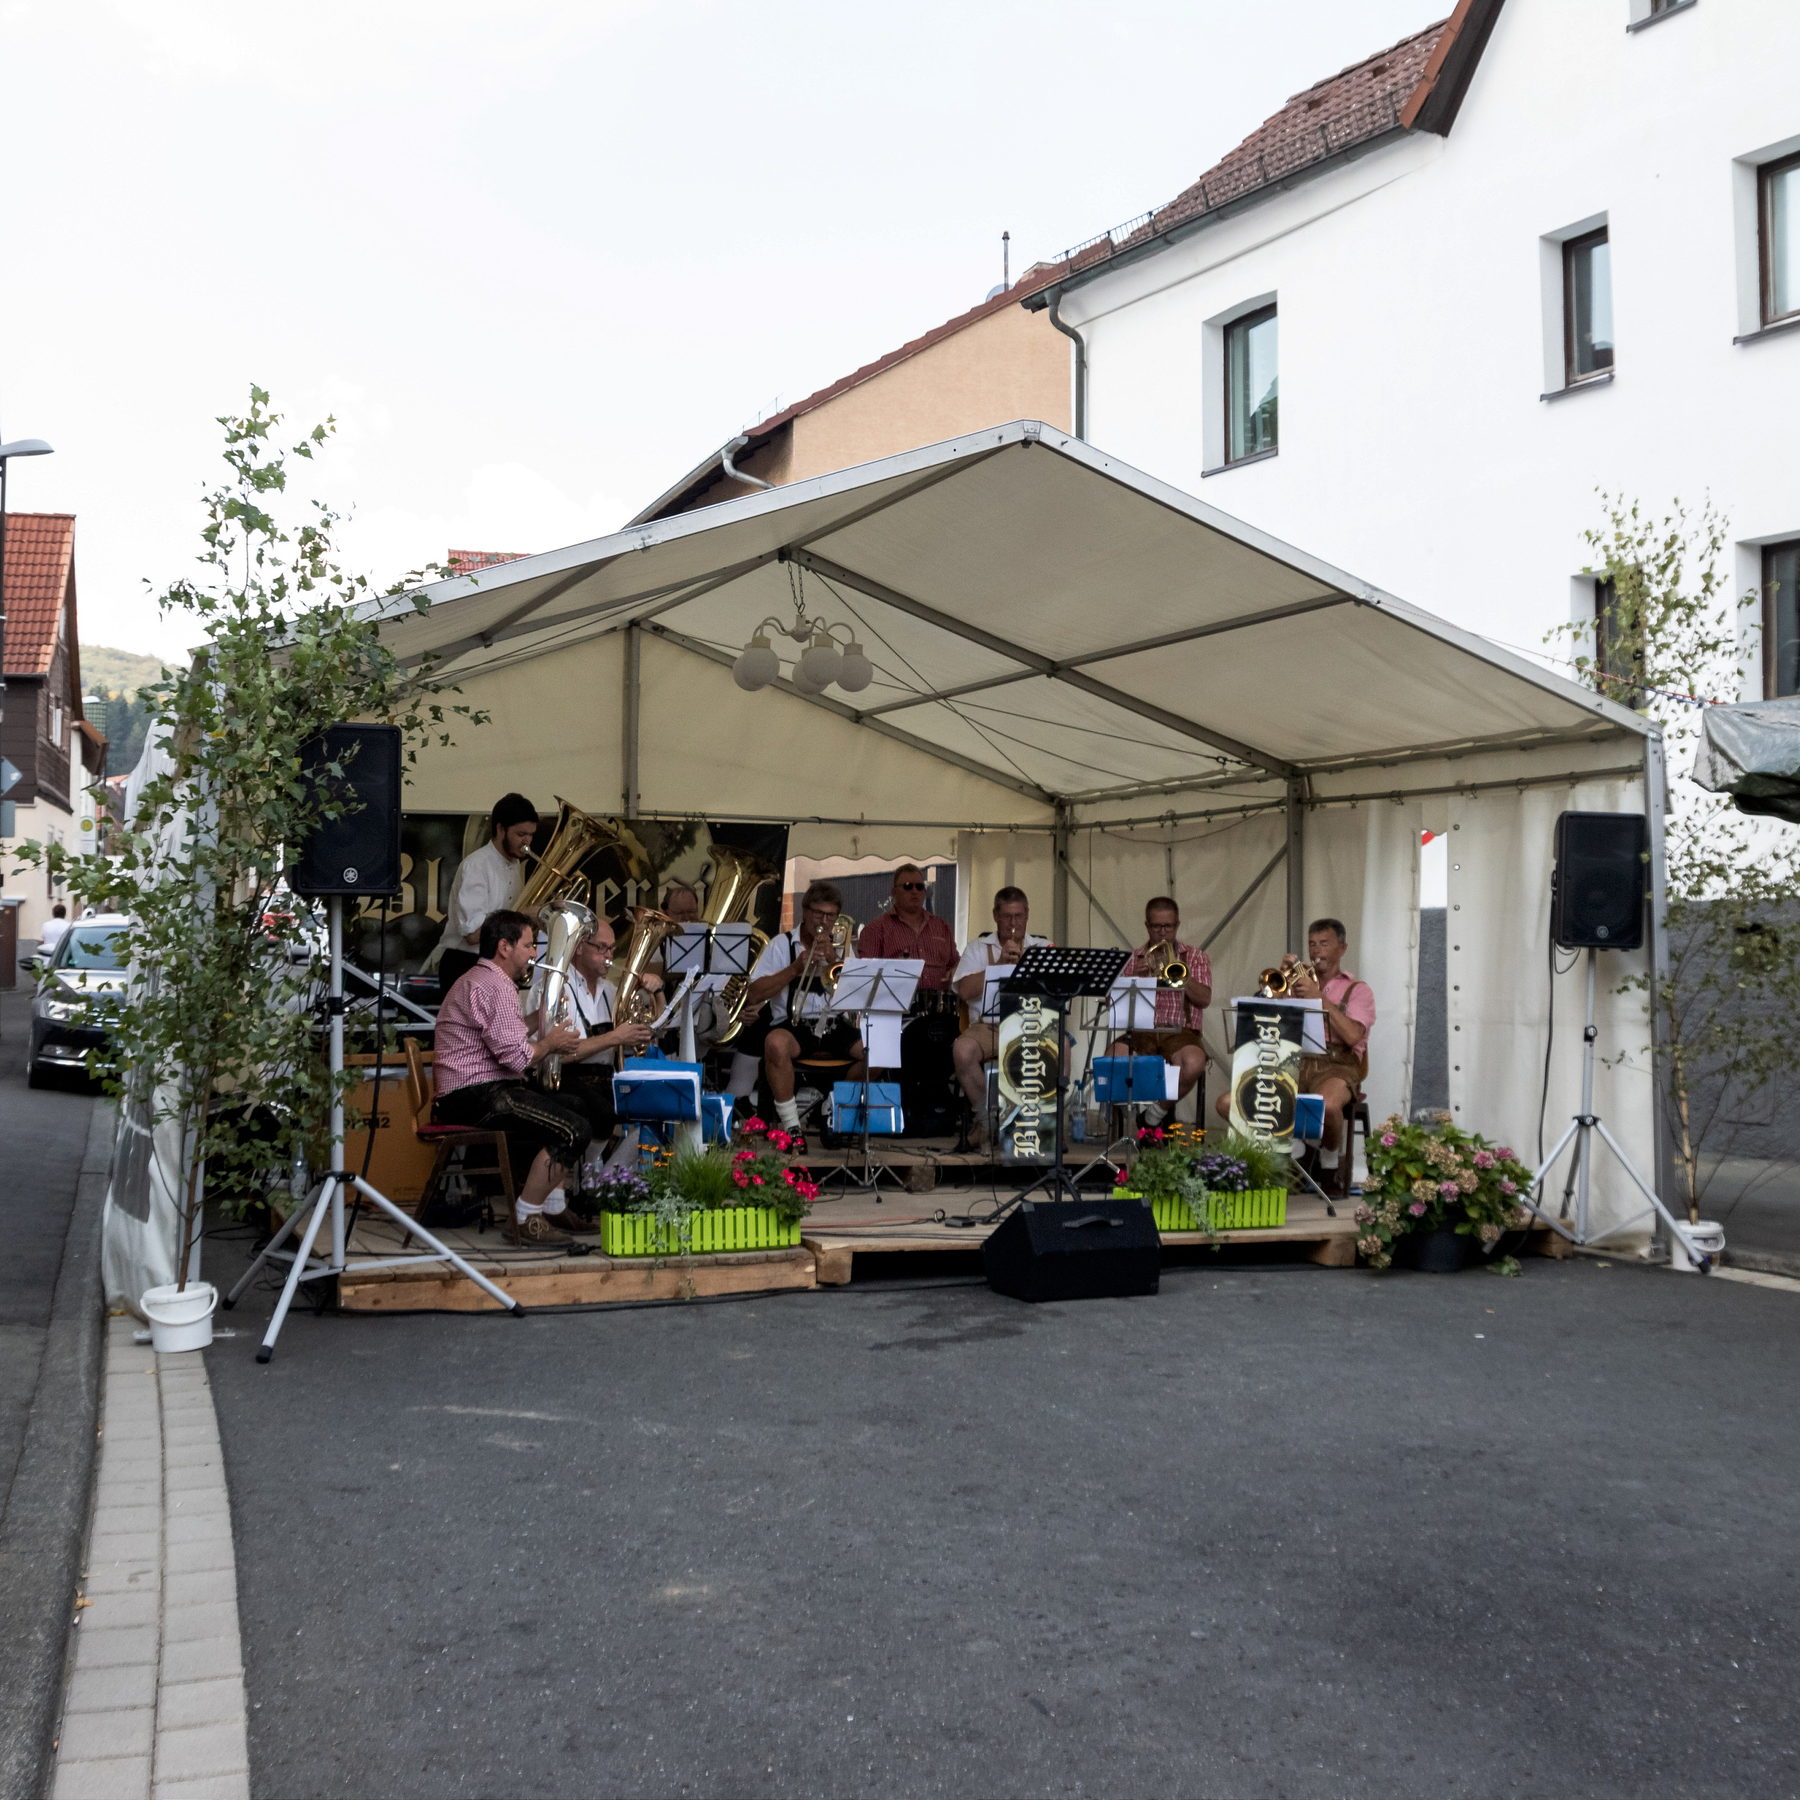 2019-08-25 - Brunnenfest 17